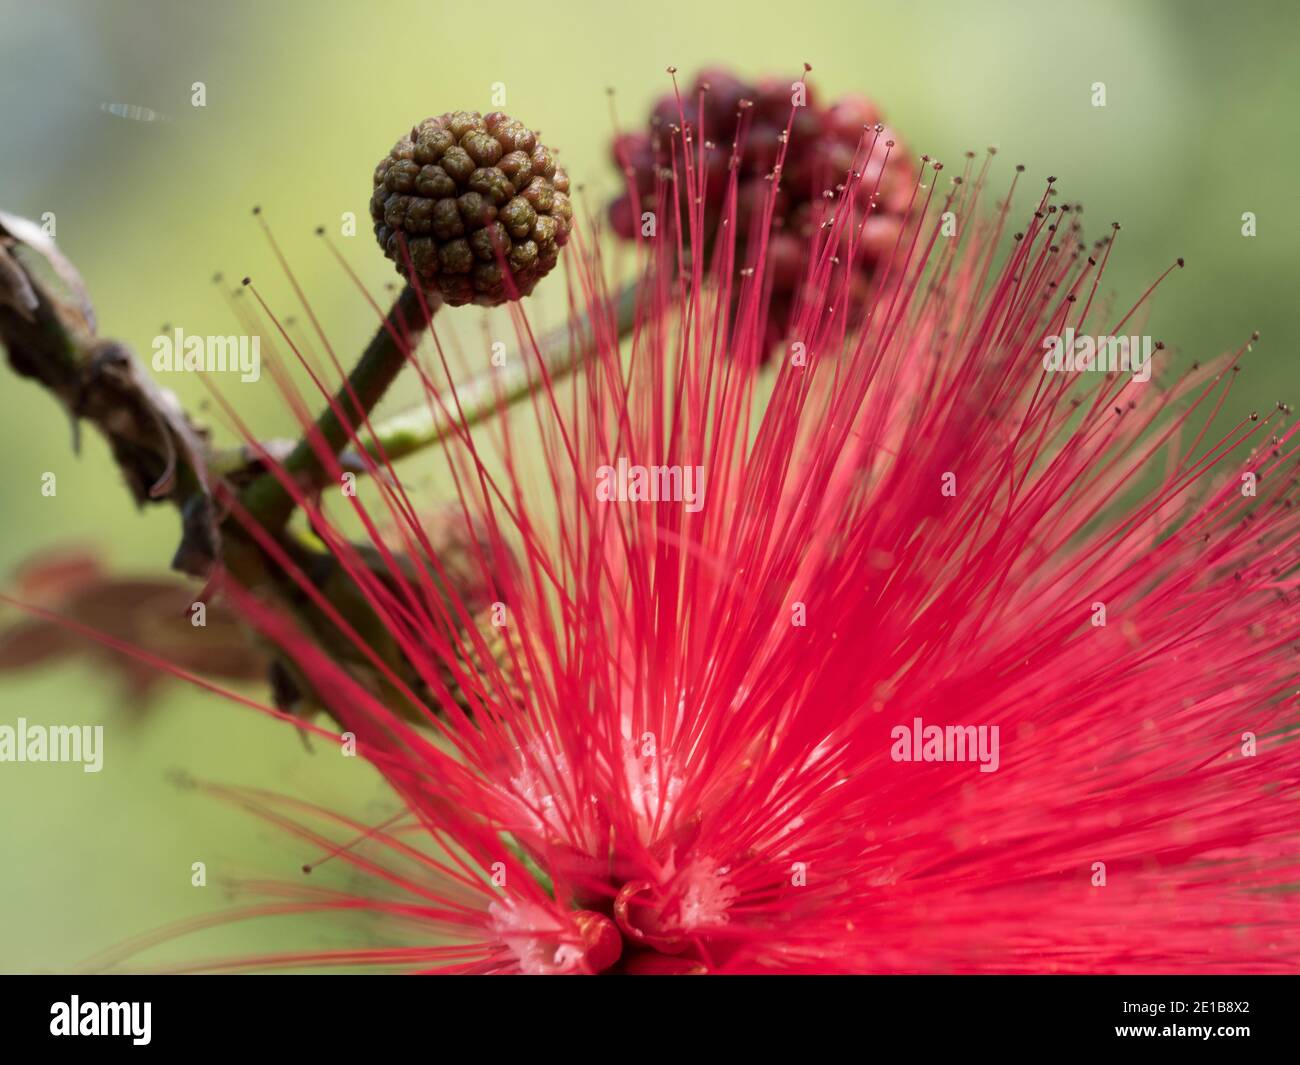 Blumen-Makro. Hübsche rote Pompomen wie Blumen und Knospen, flauschige Puffkugel von vielen langen Stadien der Pulverpuffpflanze, verschwommener grüner Gartenhintergrund Stockfoto